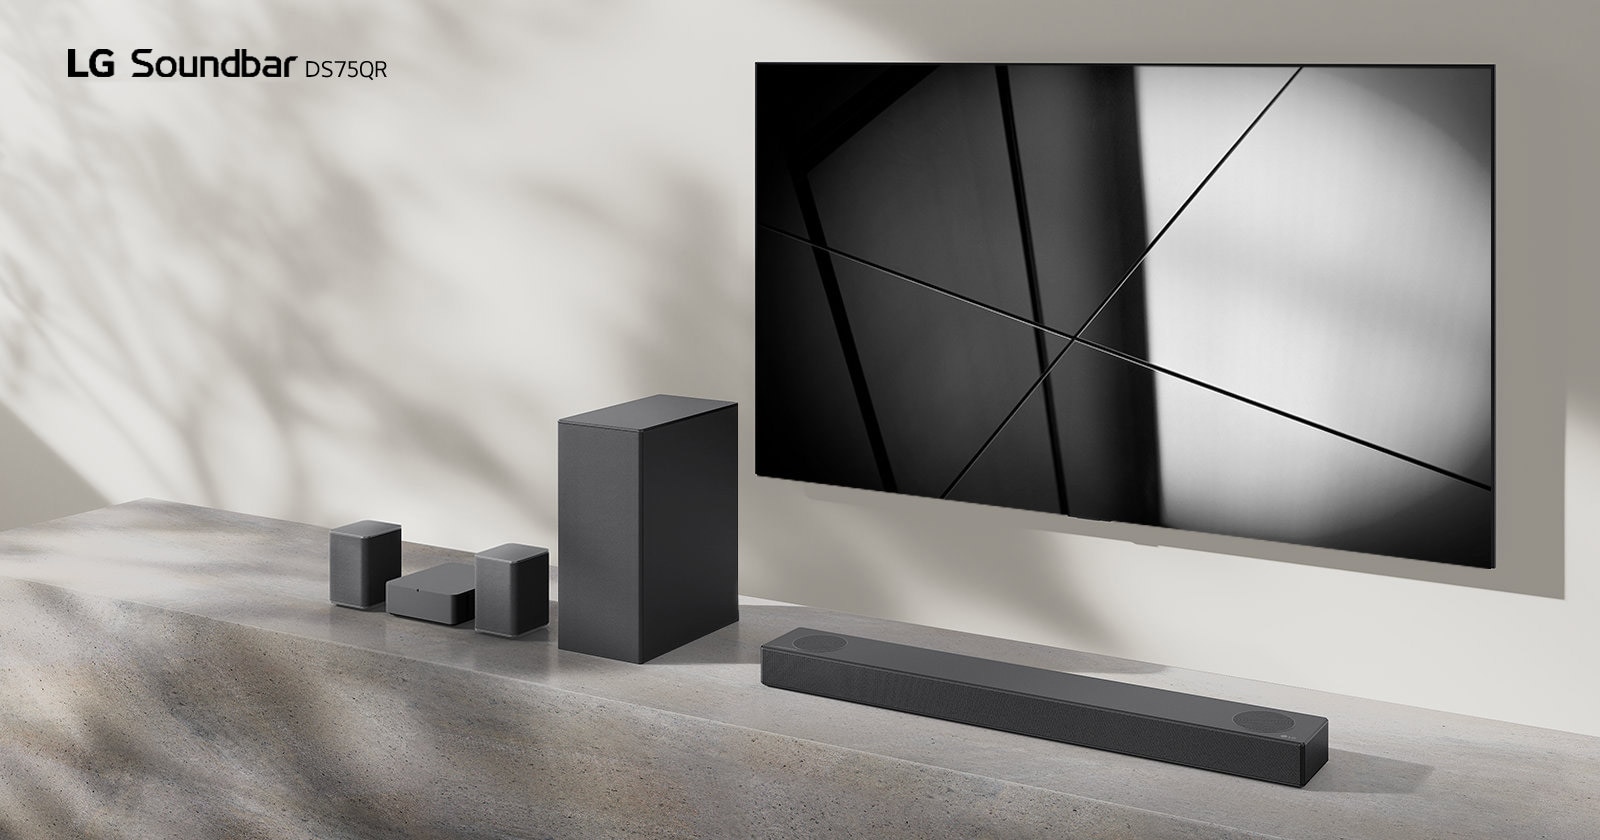 Die LG Soundbar DS75QR und ein LG TV stehen zusammen in einem Wohnzimmer. Der Fernseher ist eingeschaltet und zeigt ein Schwarzweißbild an.